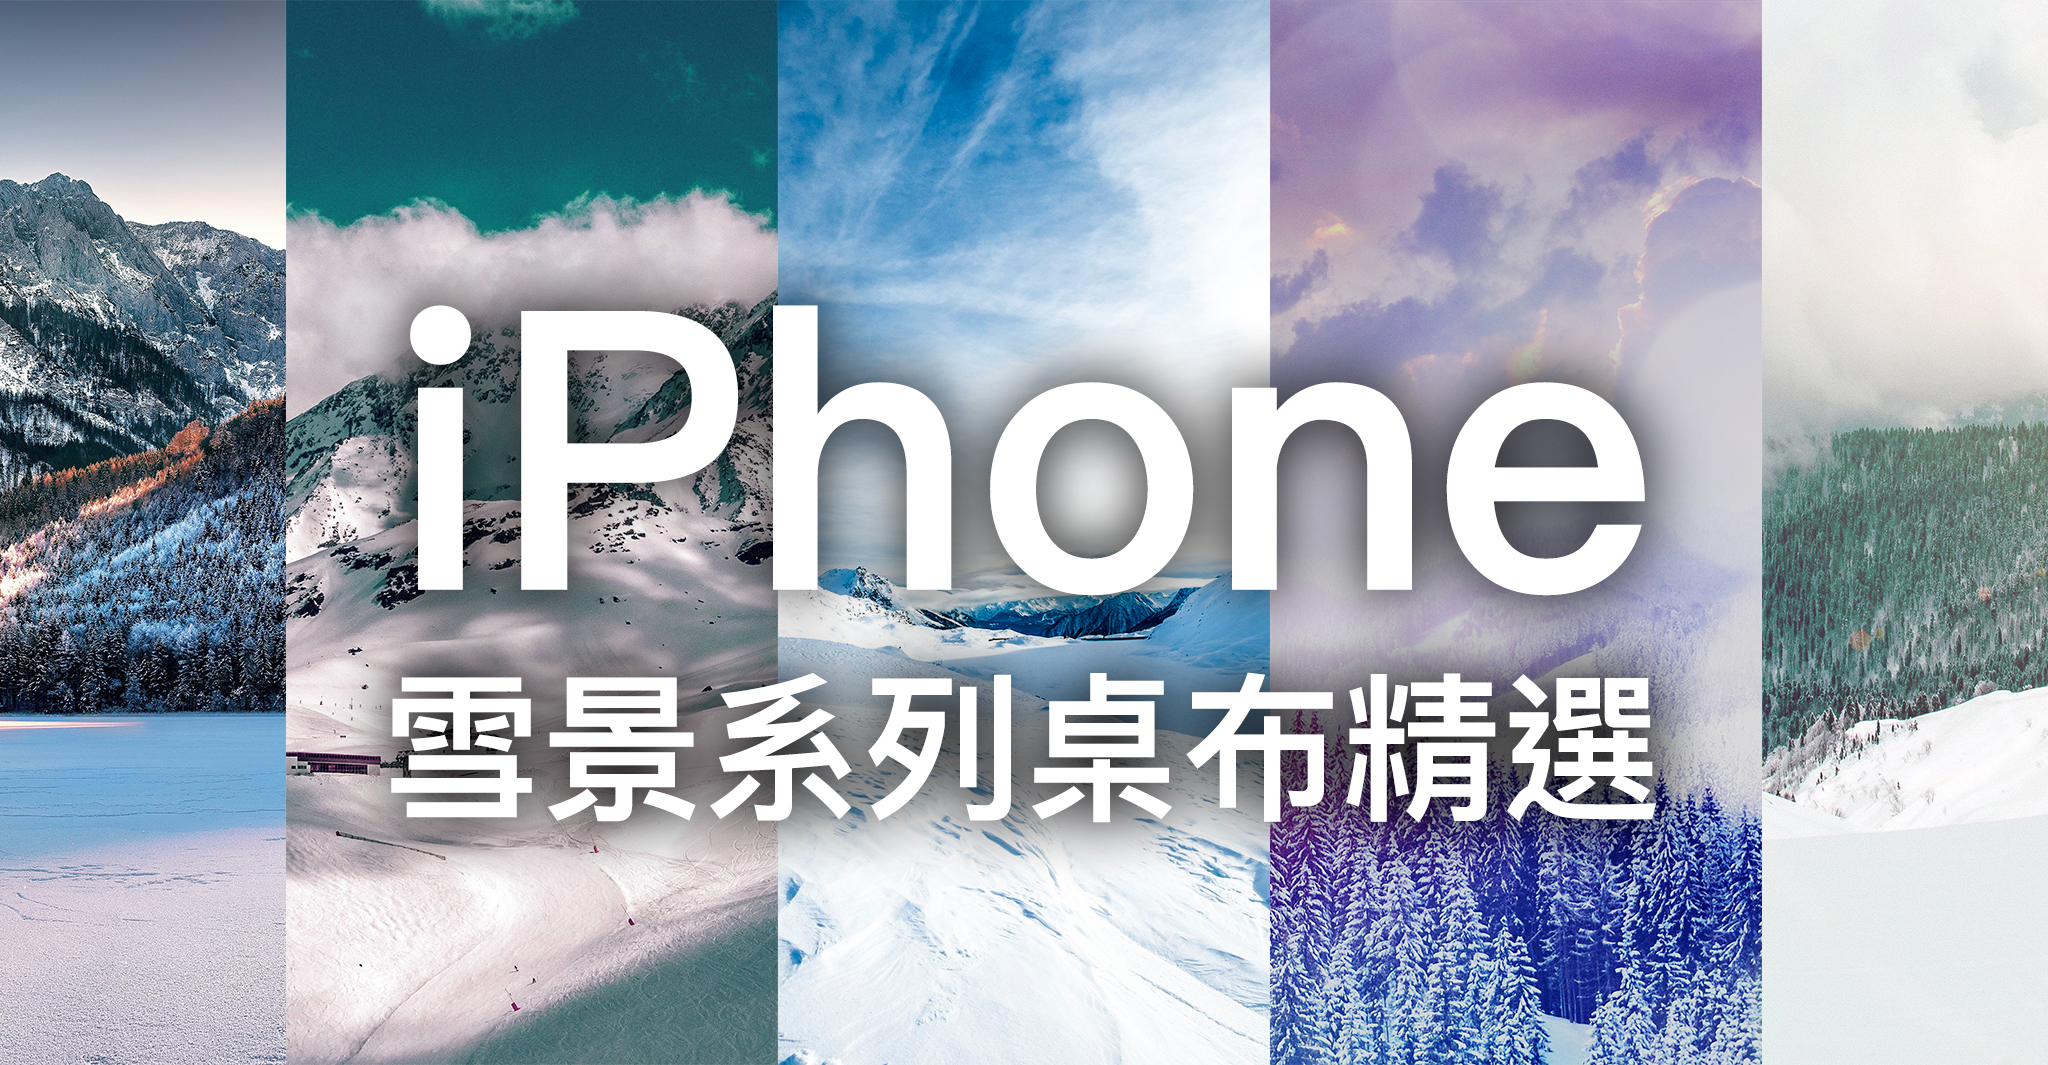 Iphone 桌布下載 精選 張雪景系列iphone 桌布 蘋果仁 Iphone Ios 好物推薦科技媒體